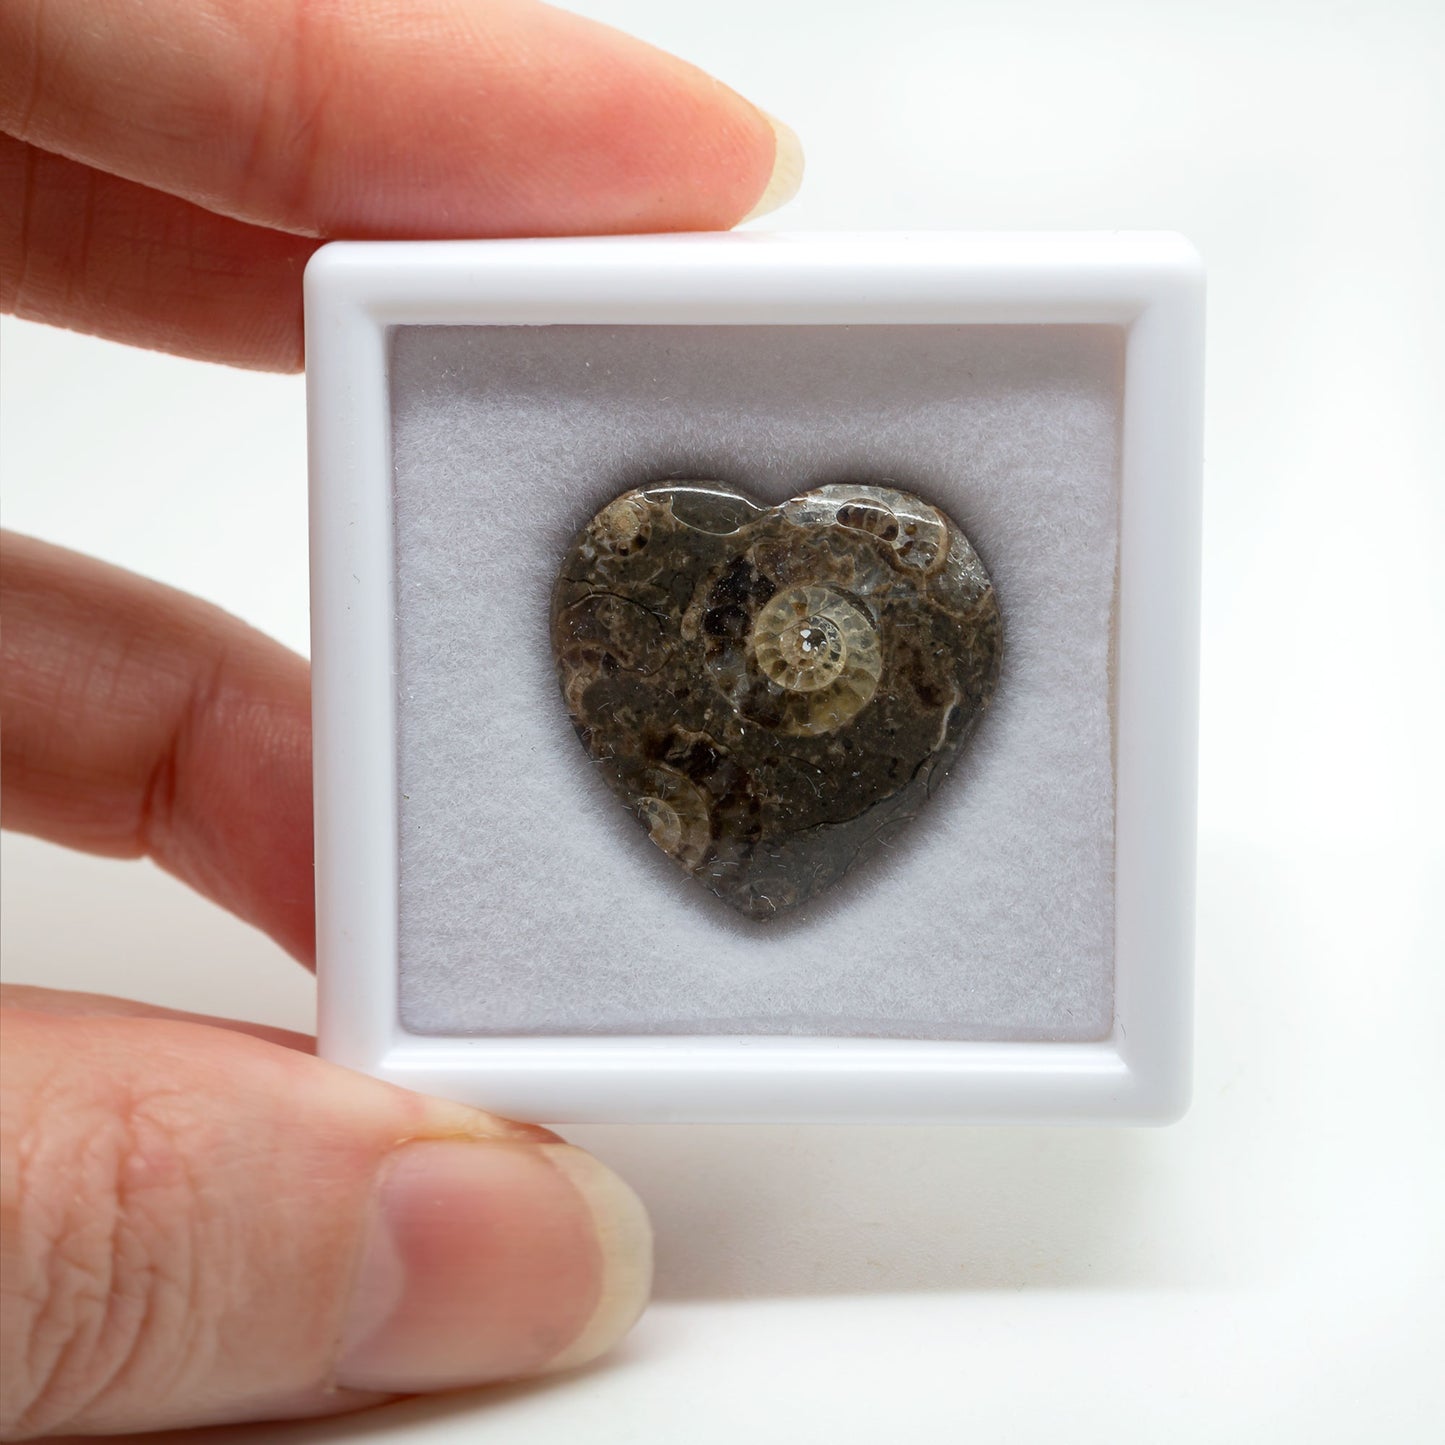 Marston Marble – Ammonites